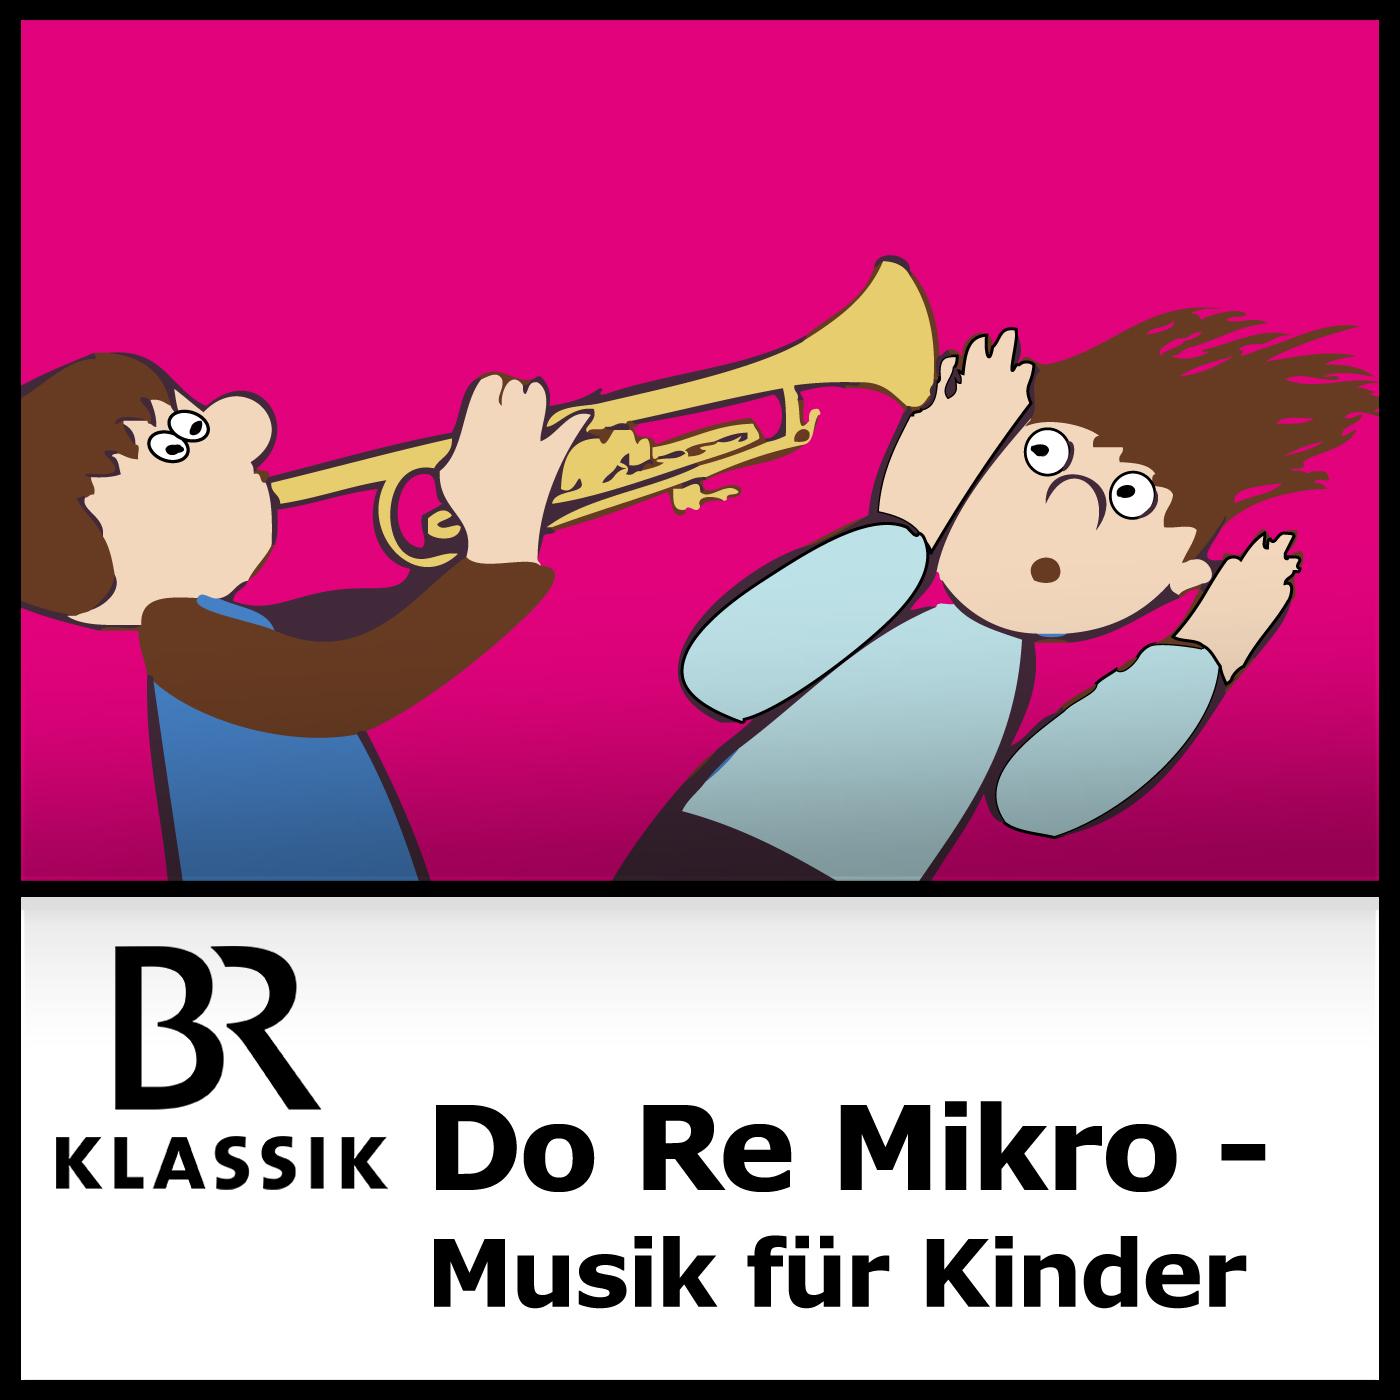 Do Re Mikro Die Musiksendung für Kinder by Bayerischer Rundfunk on Apple Podcasts